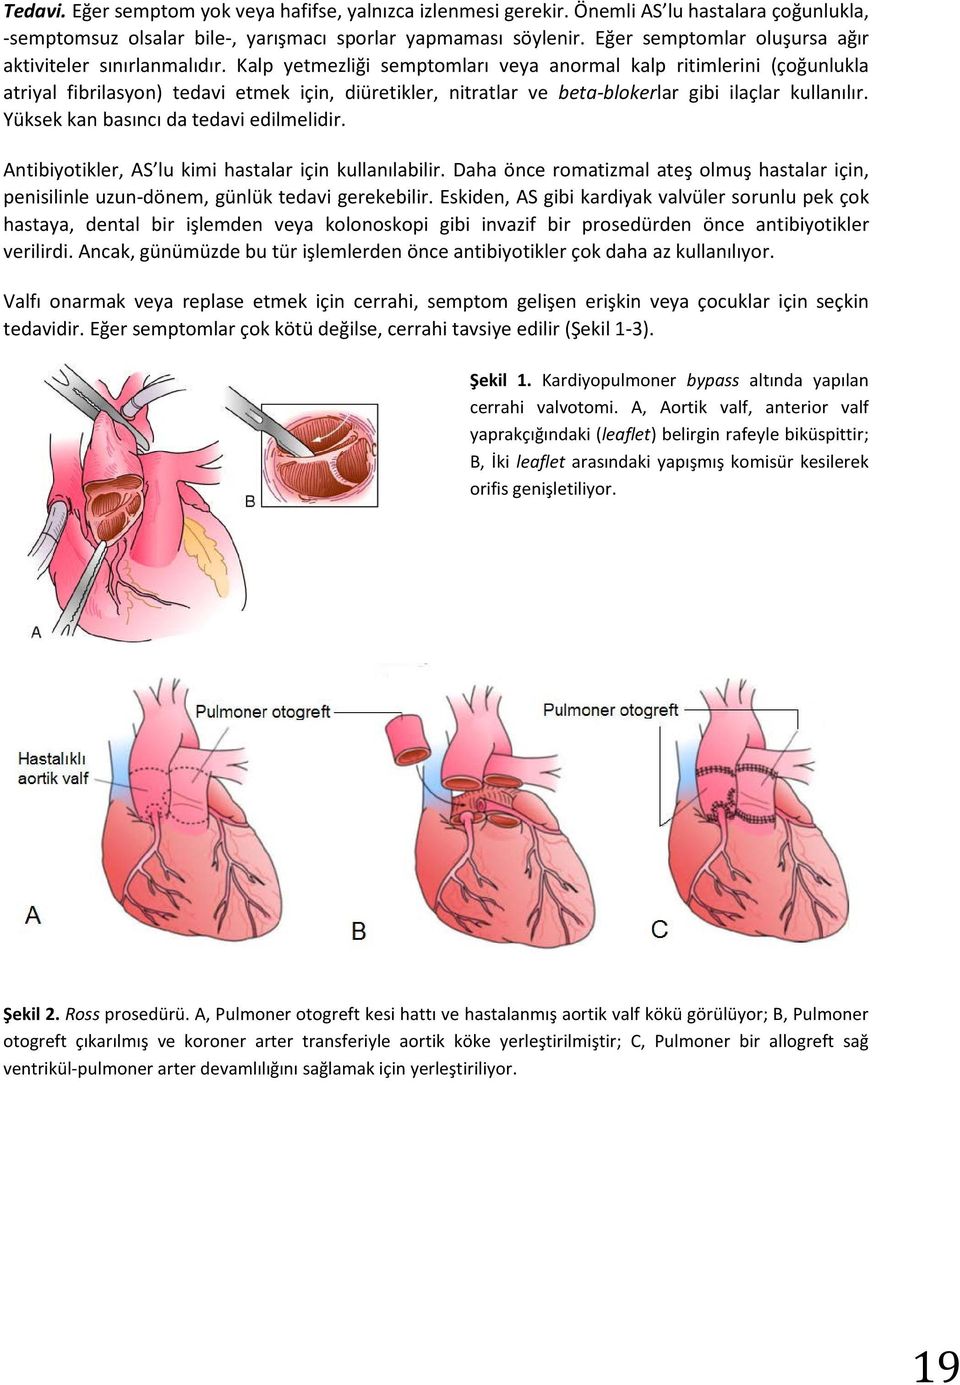 Kalp yetmezliği semptomları veya anormal kalp ritimlerini (çoğunlukla atriyal fibrilasyon) tedavi etmek için, diüretikler, nitratlar ve beta-blokerlar gibi ilaçlar kullanılır.